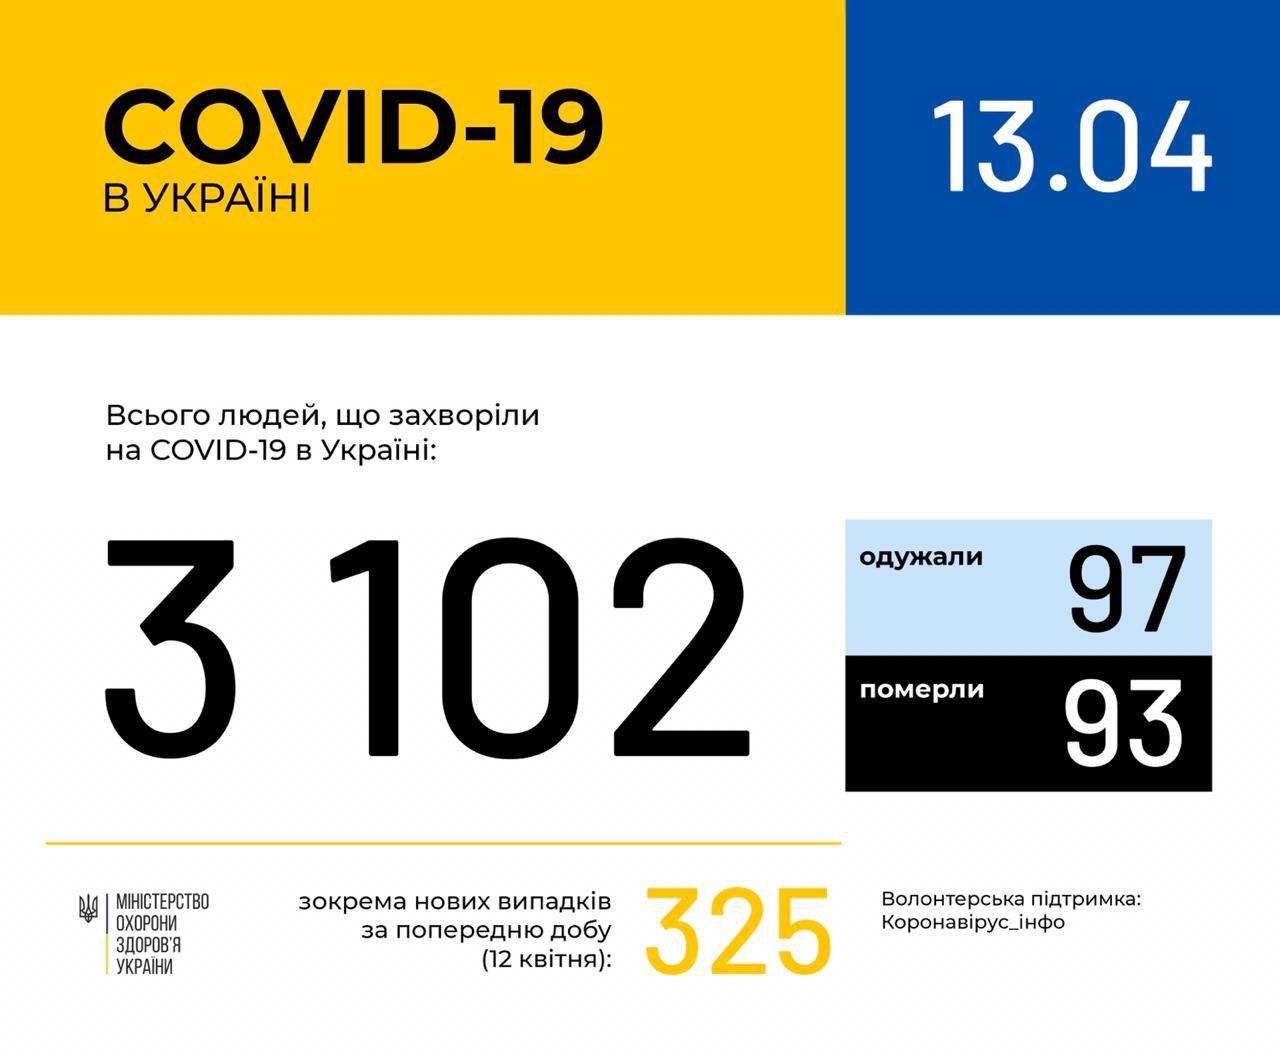 В Україні зафіксовано 3102 випадки коронавірусної хвороби COVID-19, - МОЗ